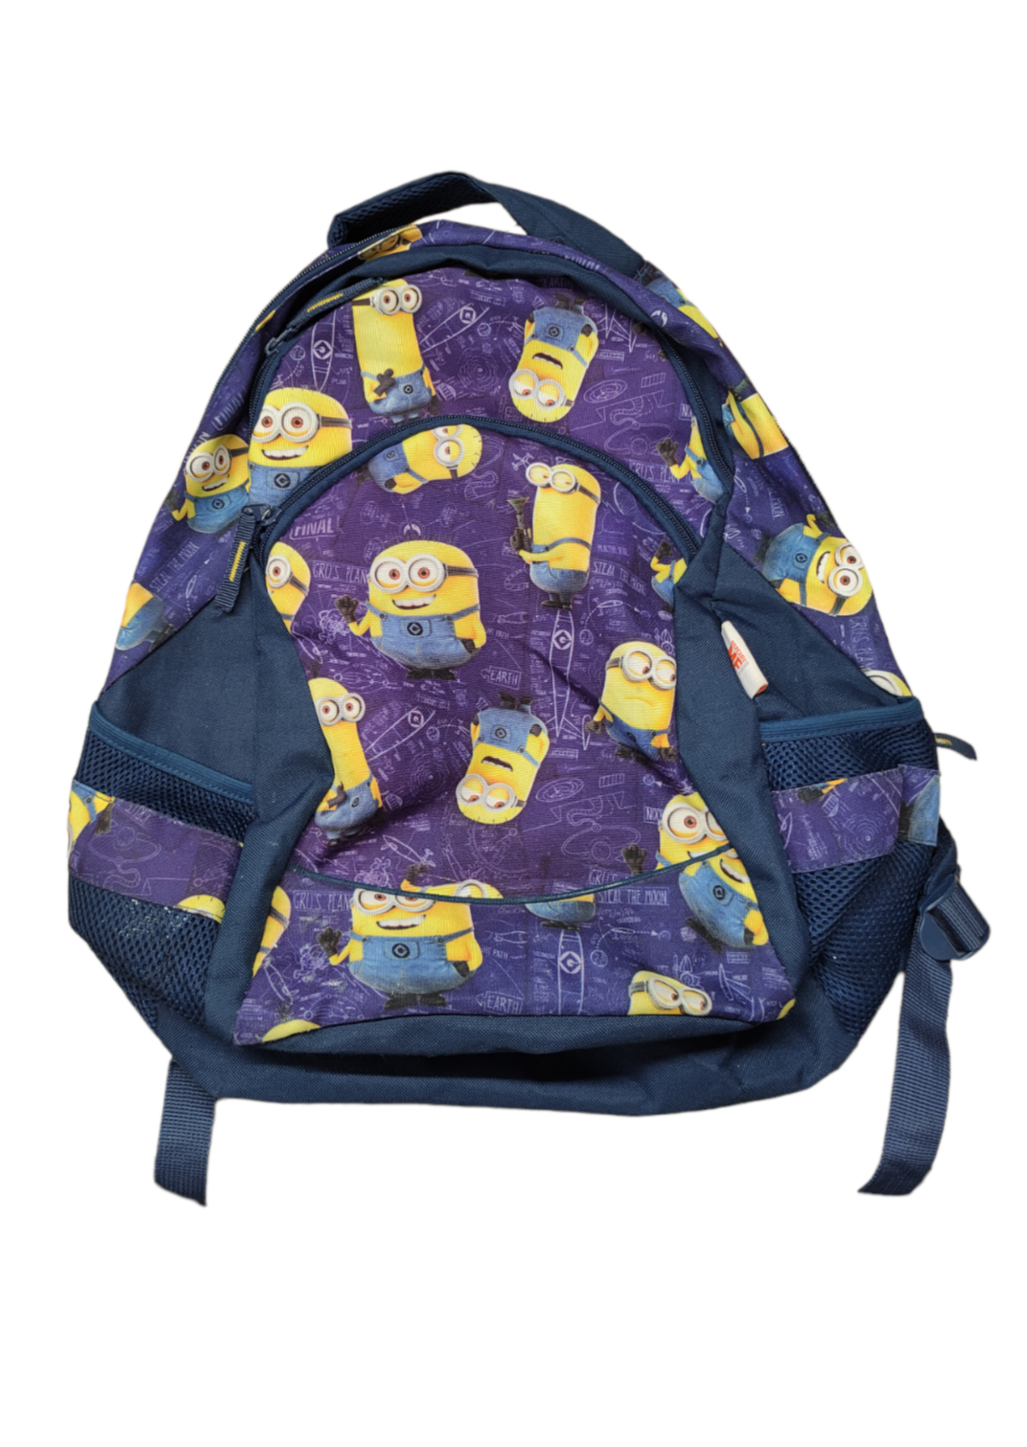 Τσάντα (Backpack) DESPECABLE ME σε Μπλε - Μωβ χρώματα